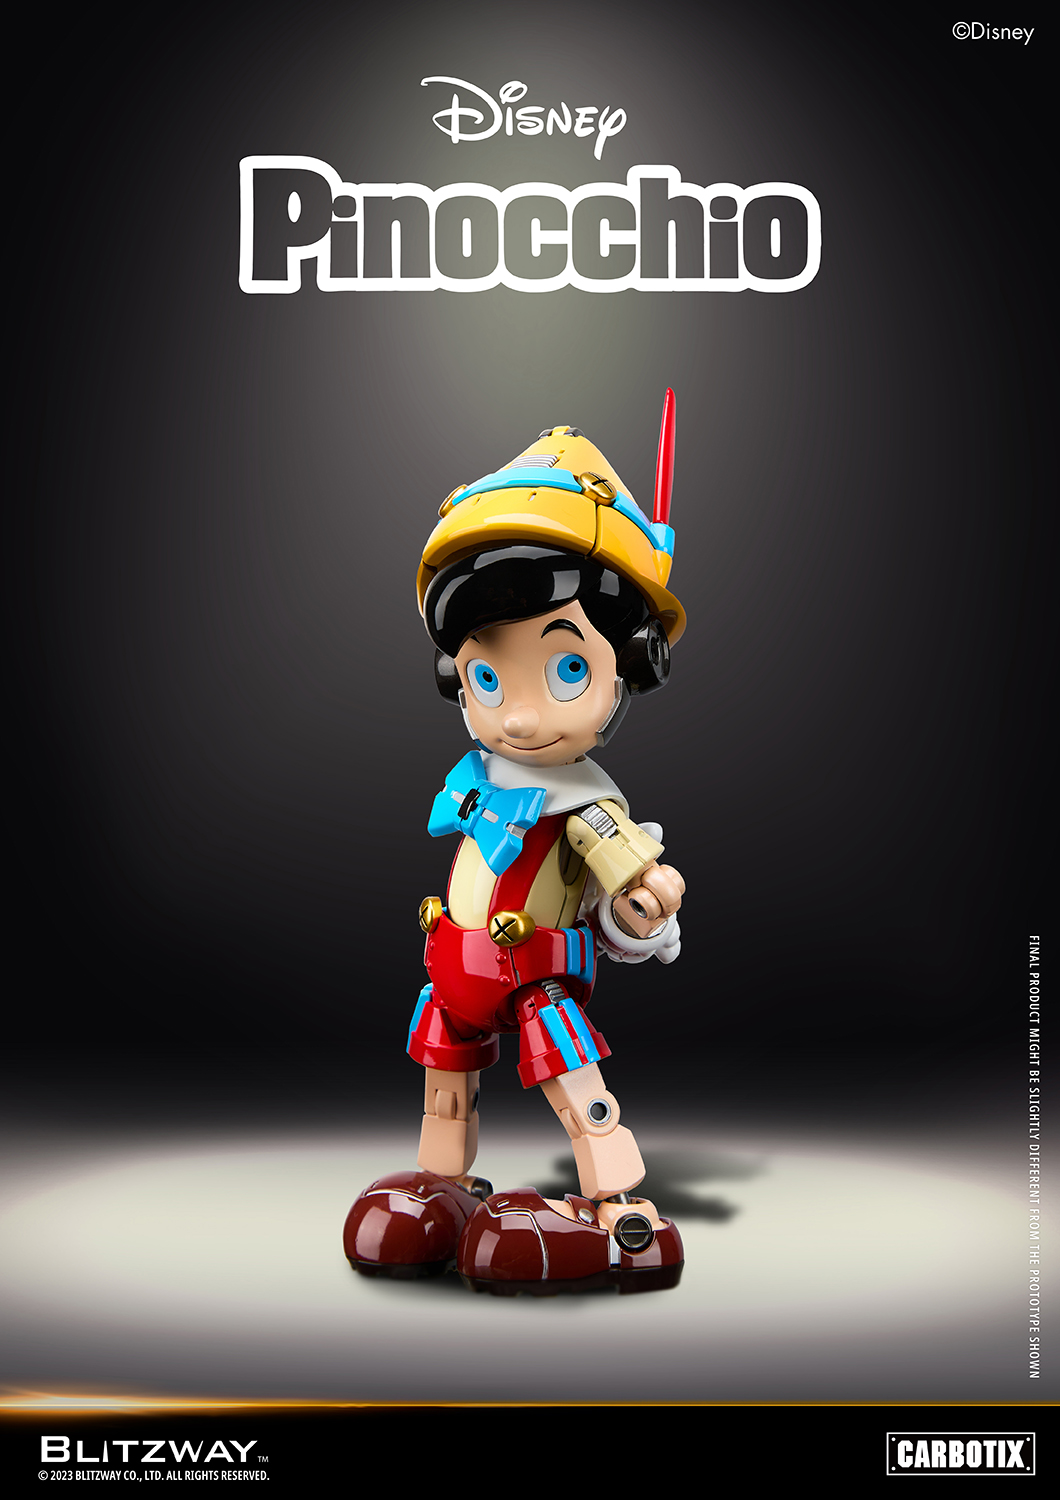 ディズニー「CARBOTIX ピノキオ」のフィギュア画像